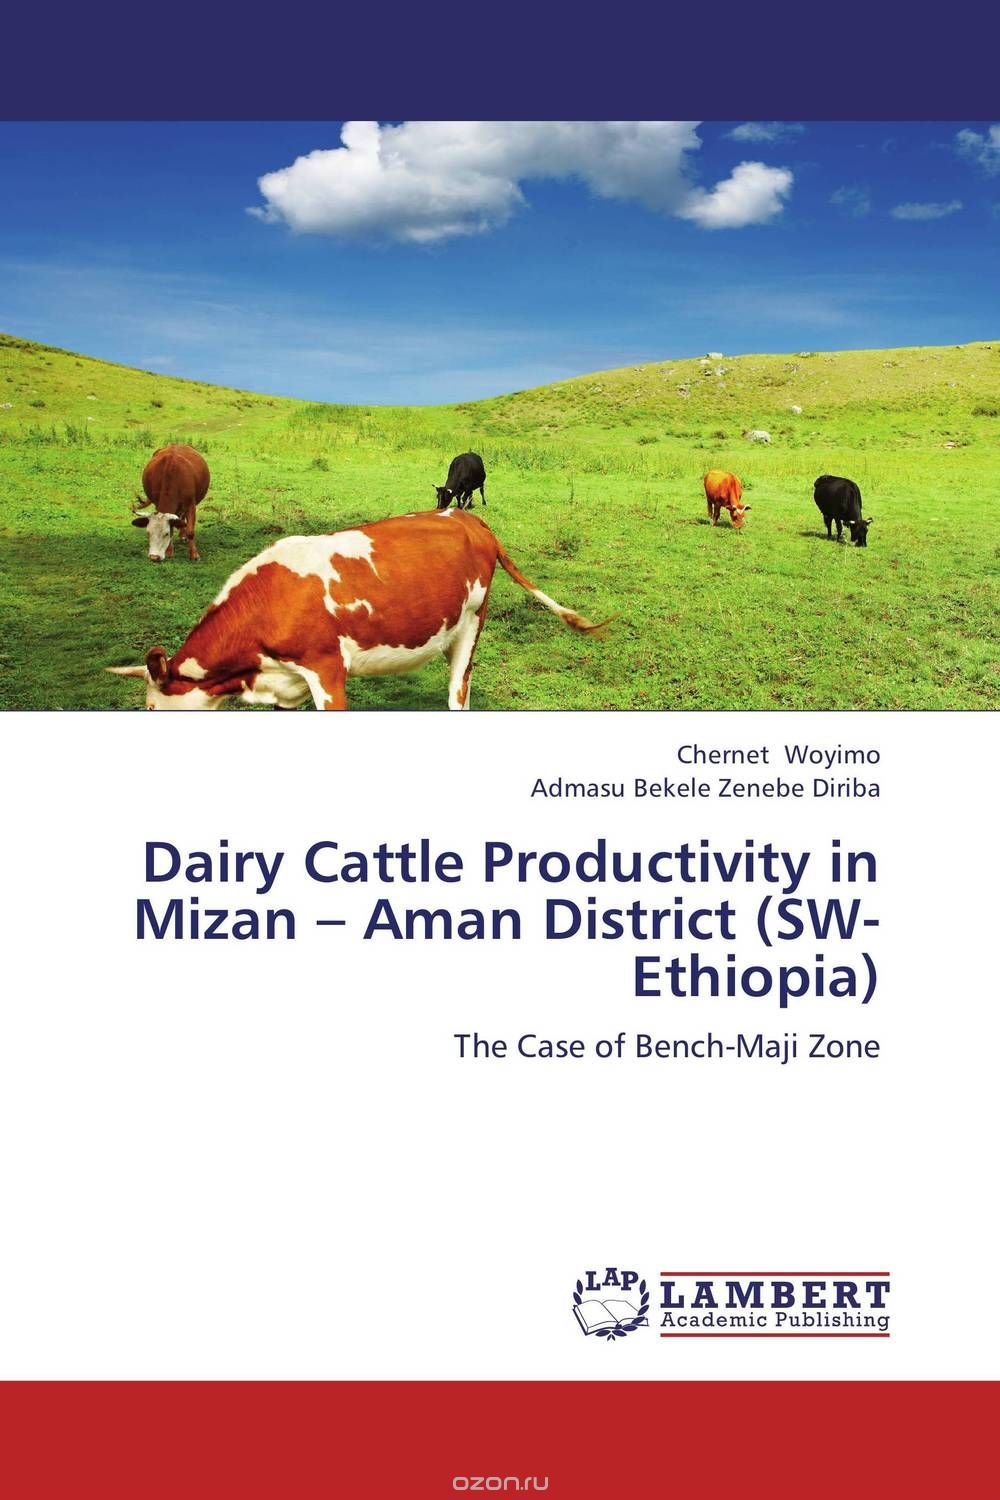 Скачать книгу "Dairy Cattle Productivity in Mizan – Aman District (SW-Ethiopia)"